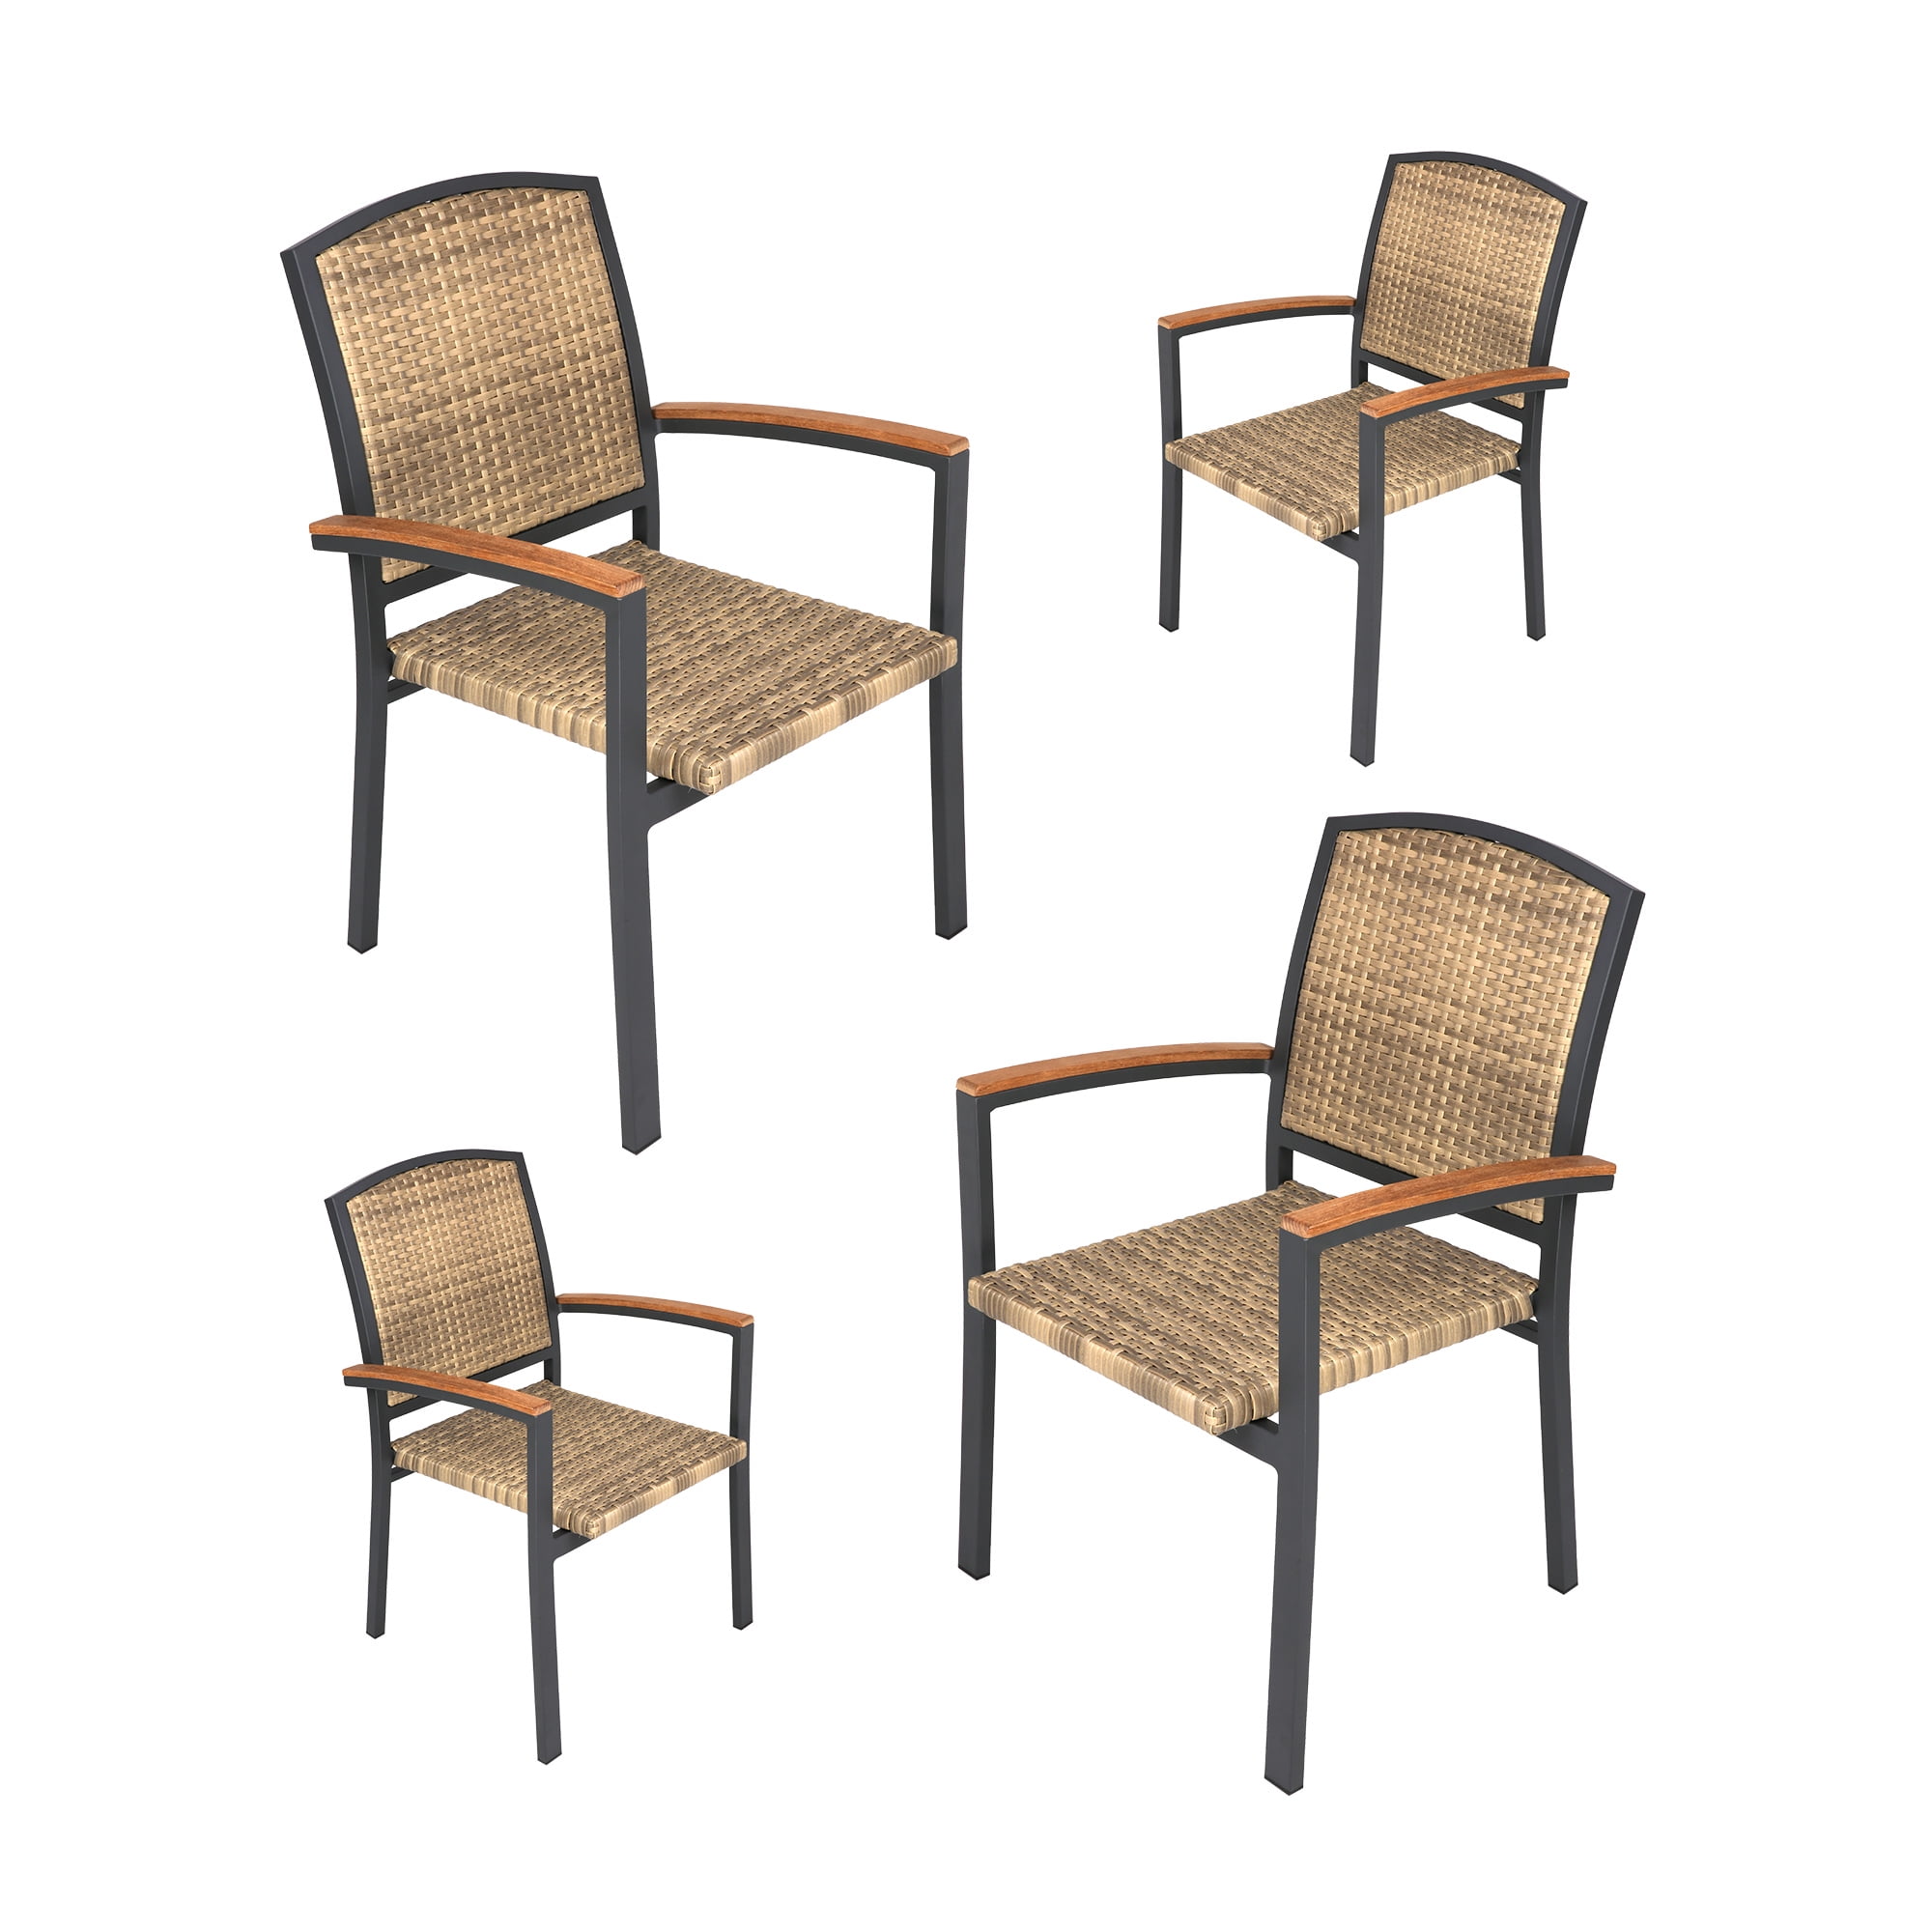 特別価格PatioFestival Patio Dining Chairs Stackable Outdoor Chairs Dining